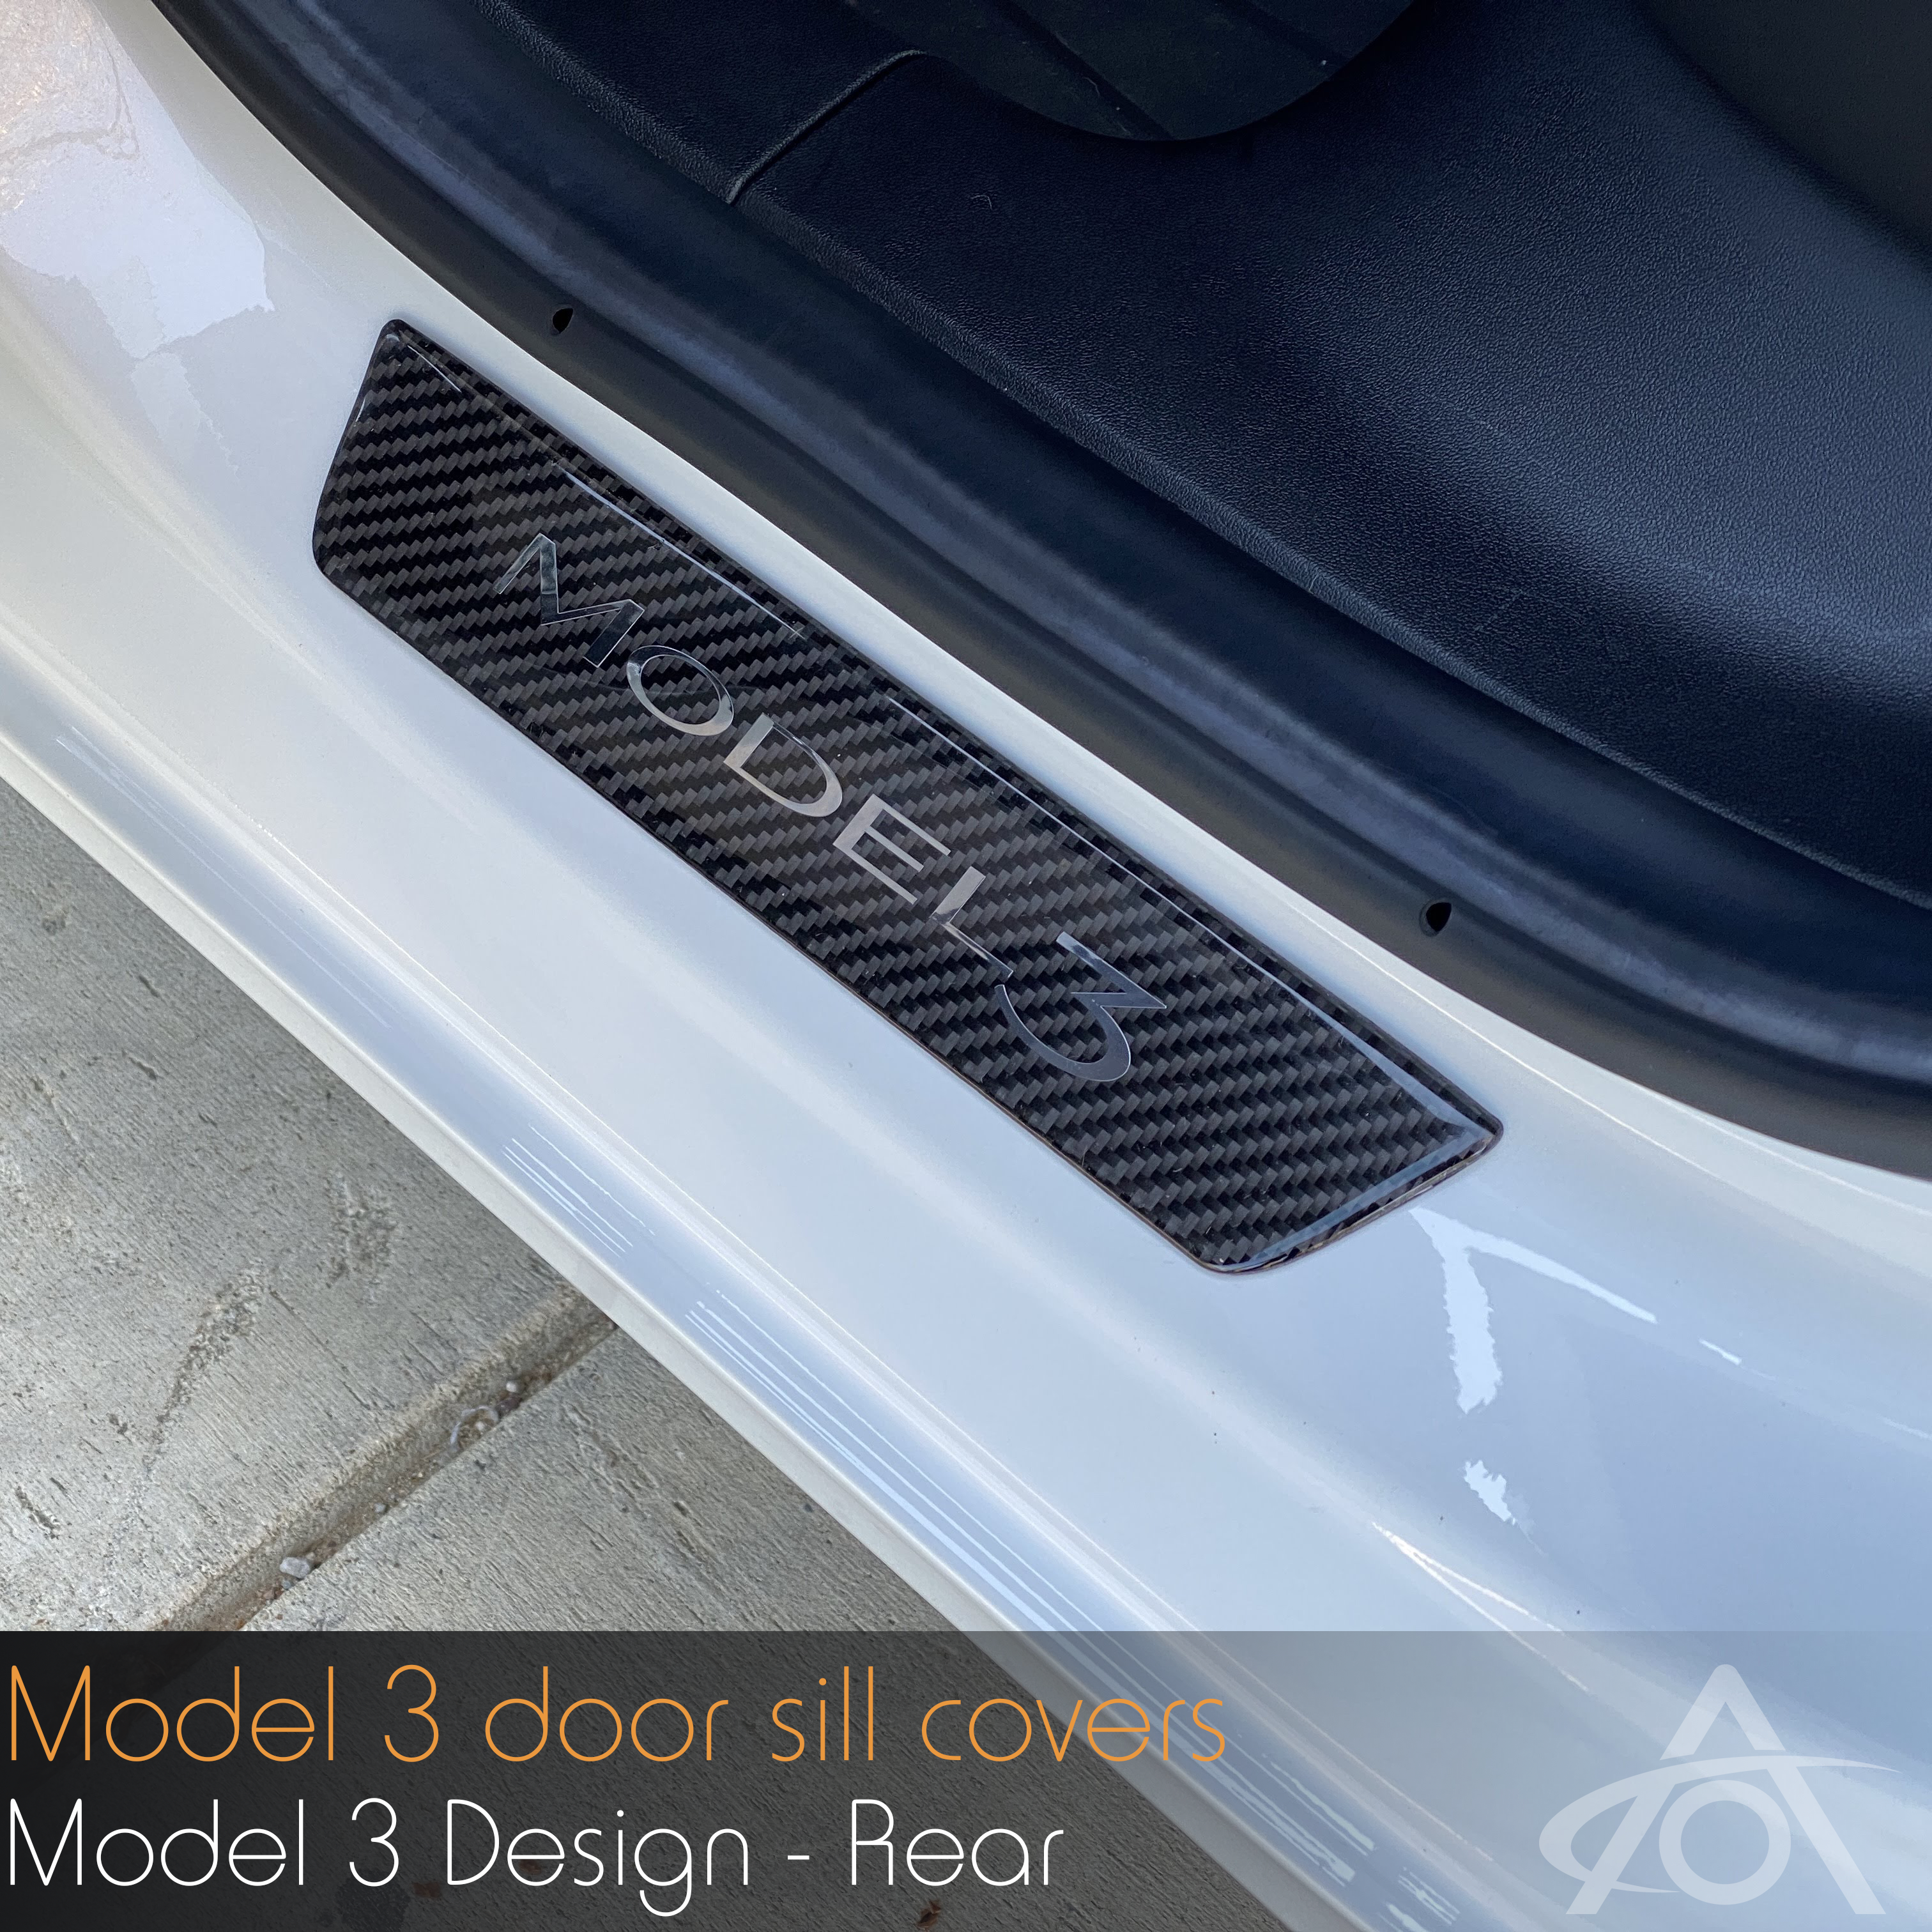 Model 3 Carbon Fiber Door Sill Covers - Rear